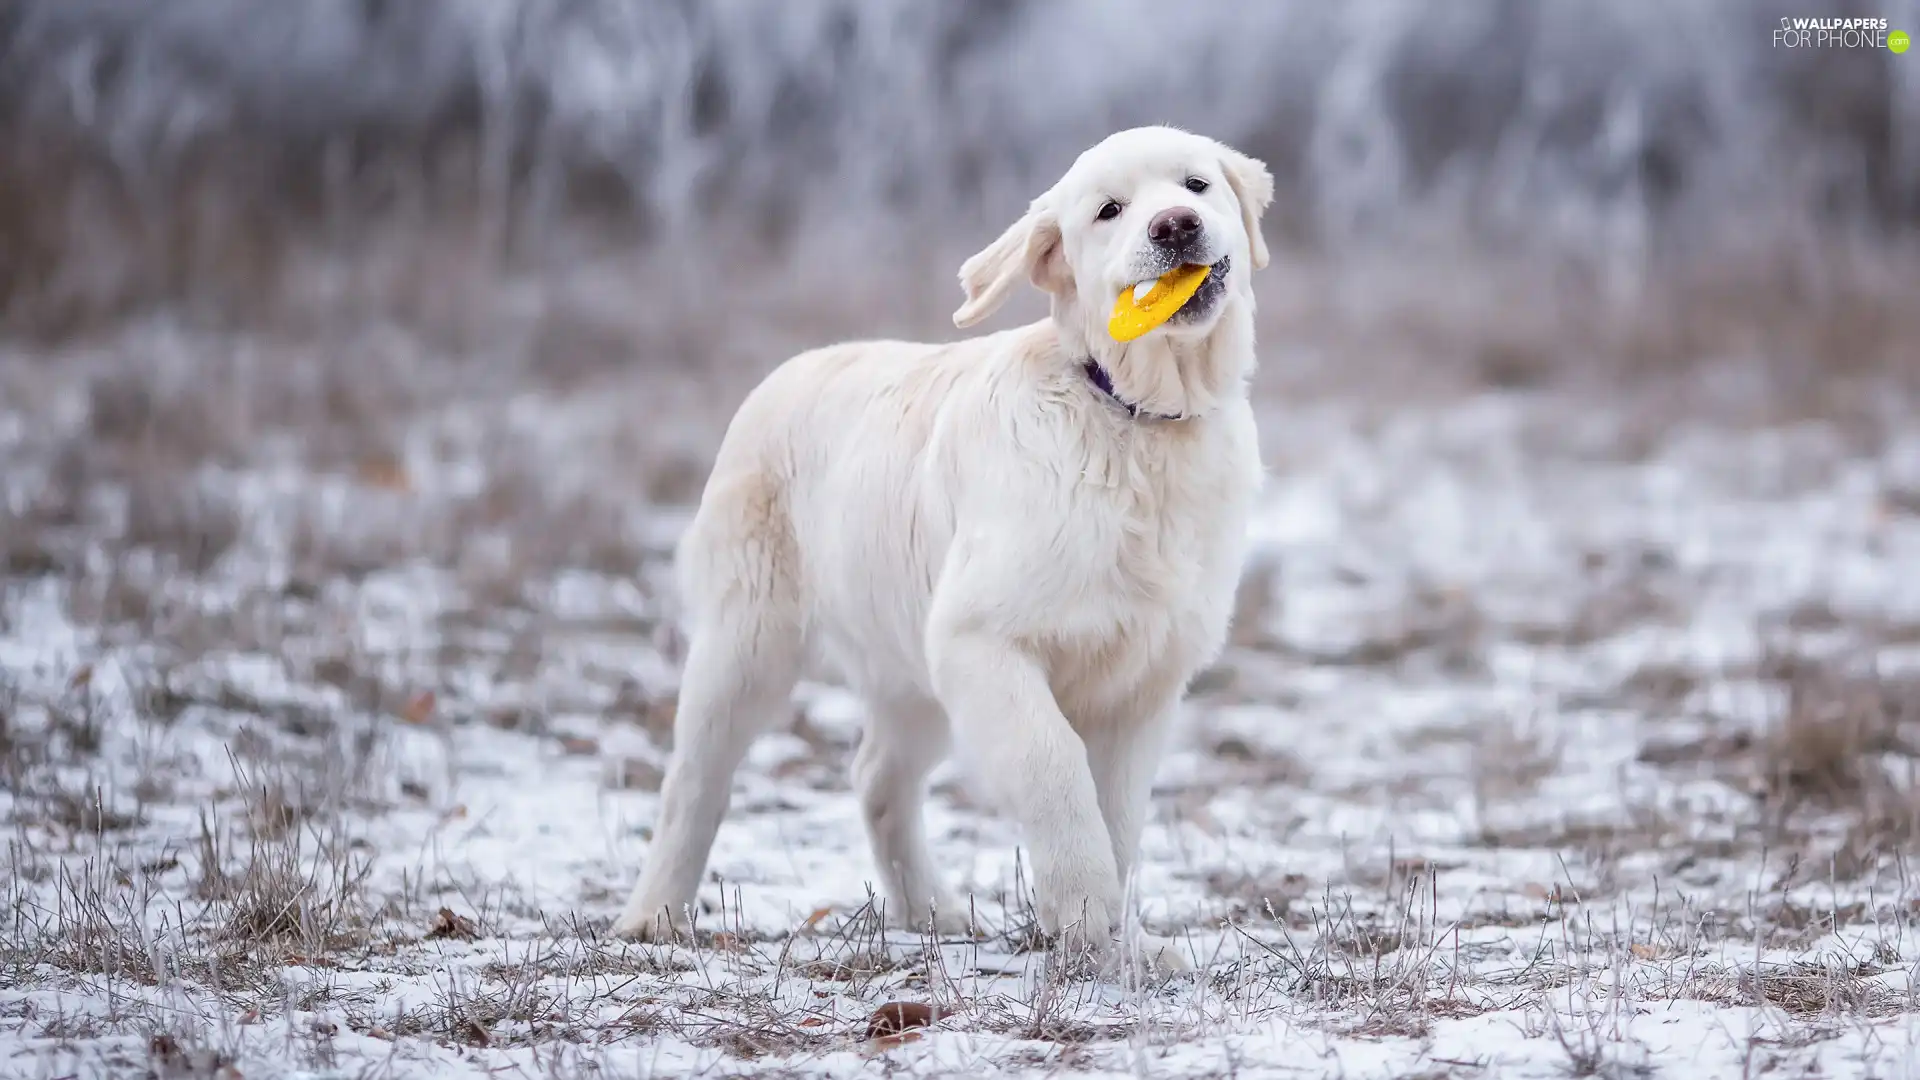 Puppy, toy, snow, Golden Retriever